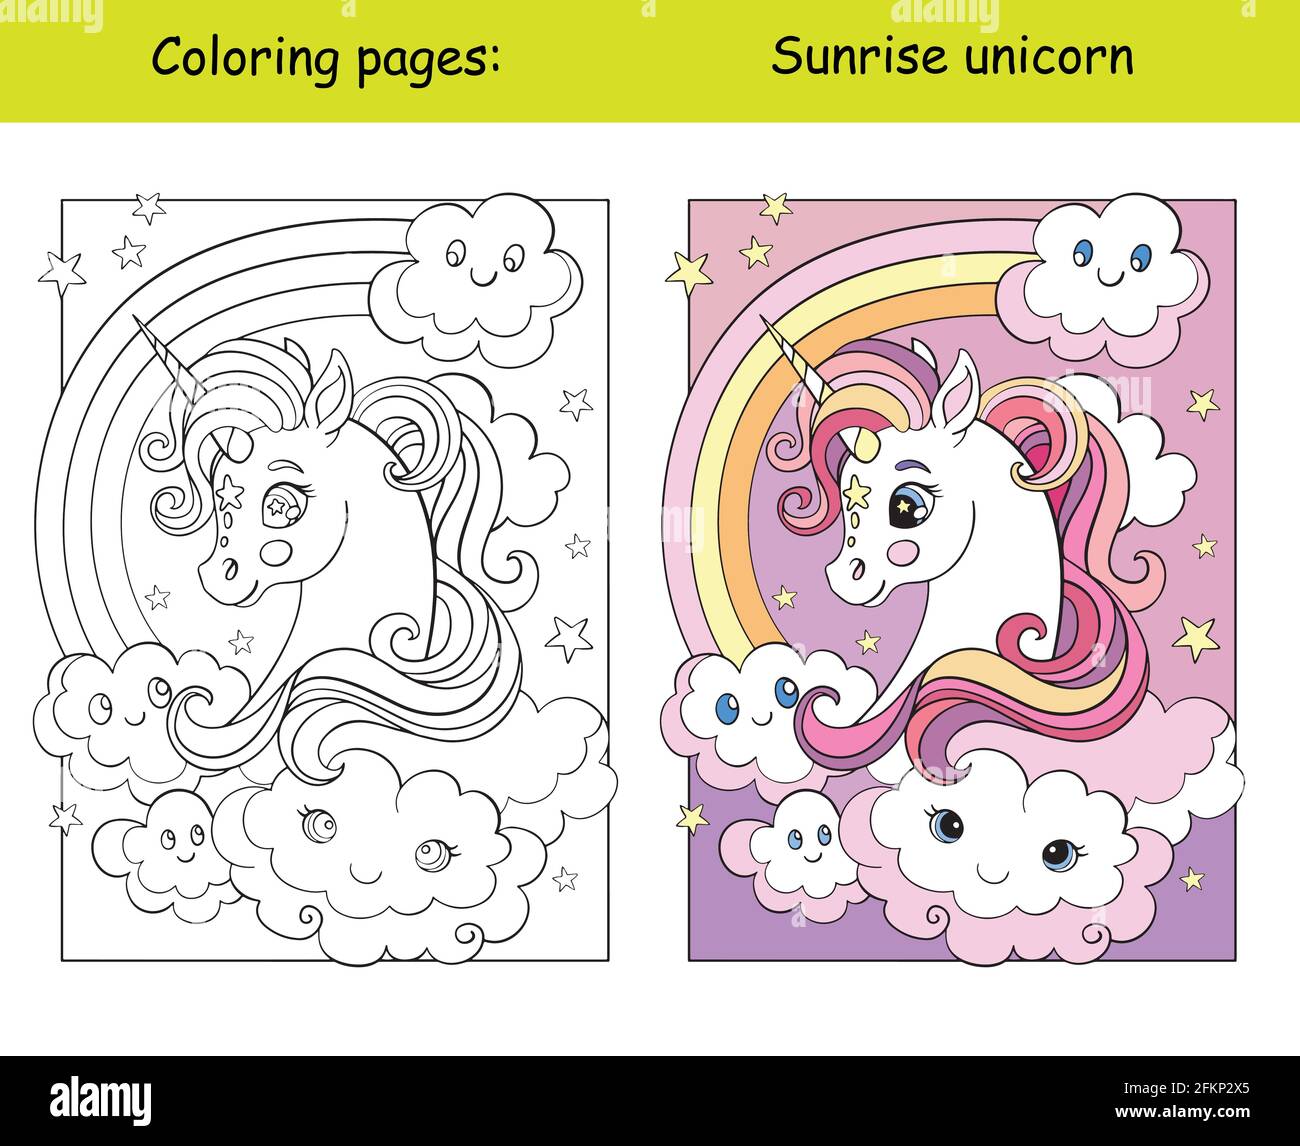 Testa unicorno di bellezza con arcobaleno e nuvole. Pagina del libro da colorare per i bambini con modello colorato. Illustrazione isolata di cartoni animati vettoriali. Per colorina Illustrazione Vettoriale